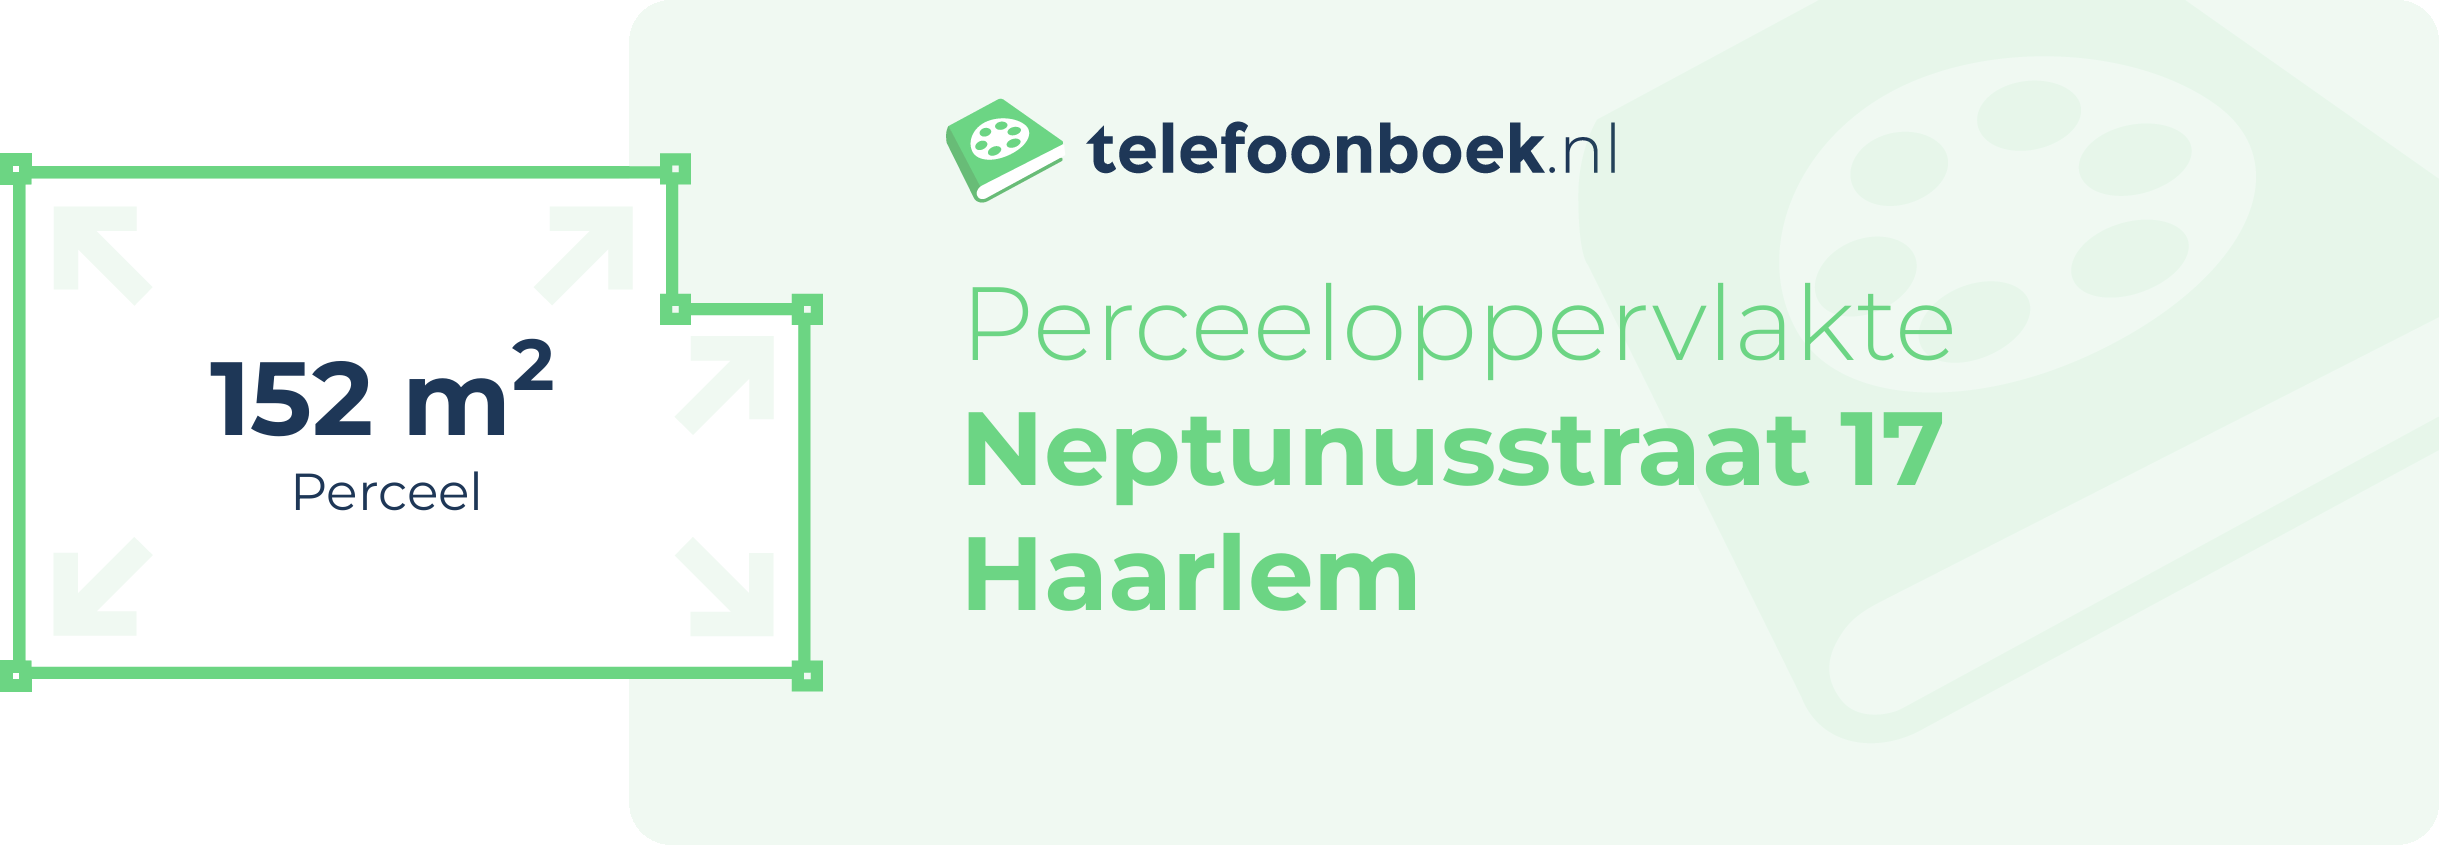 Perceeloppervlakte Neptunusstraat 17 Haarlem